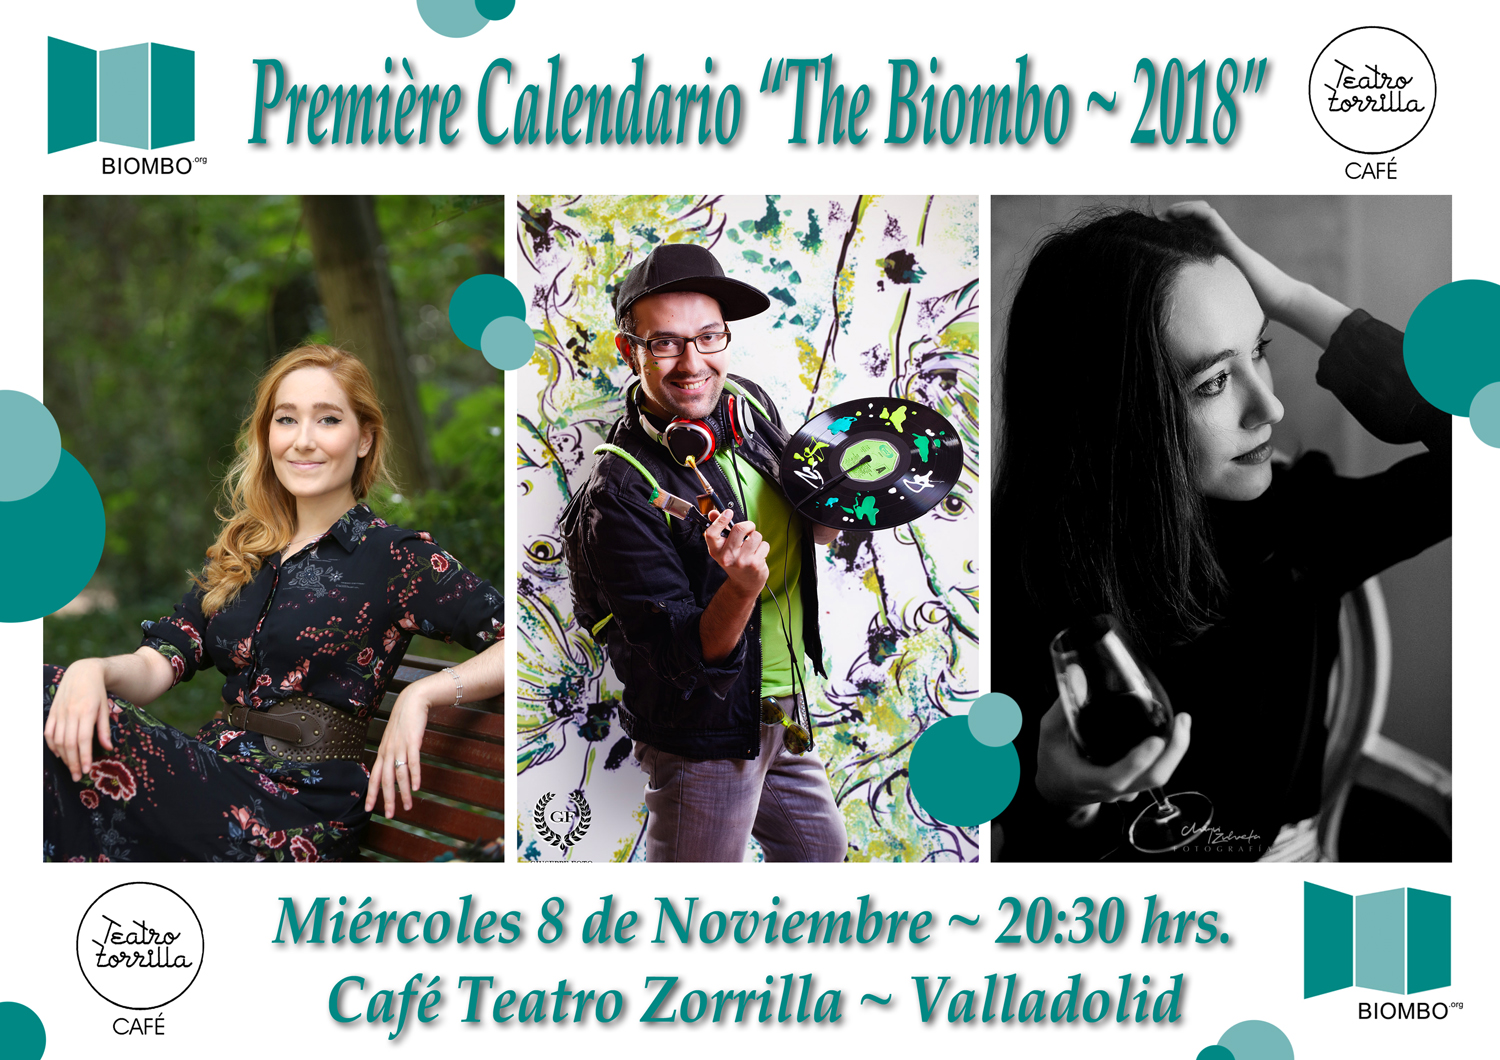 Première del Calendario The Biombo 2018